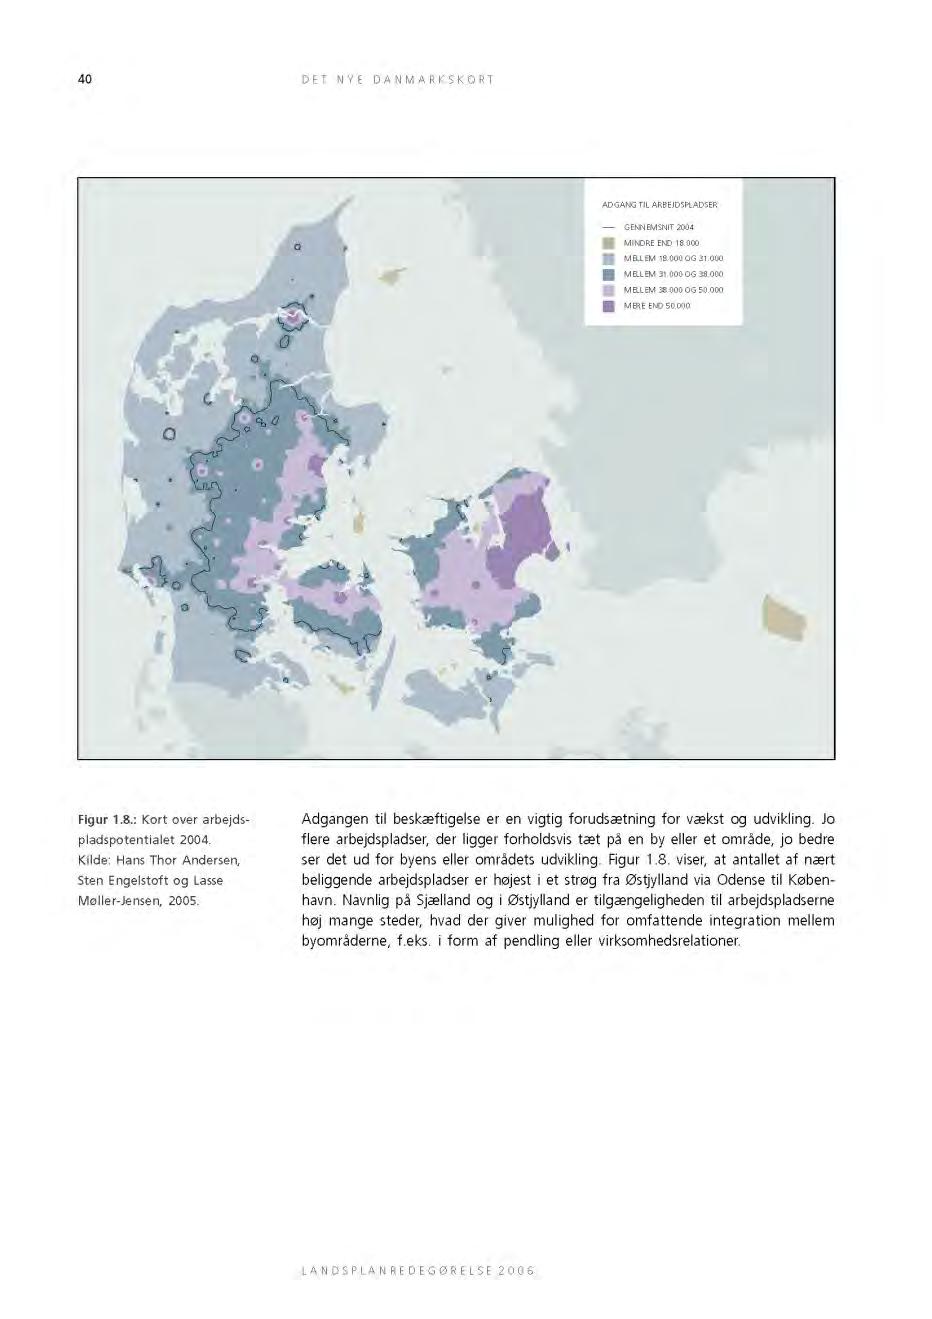 1995-2006 Denmark, Accessibility